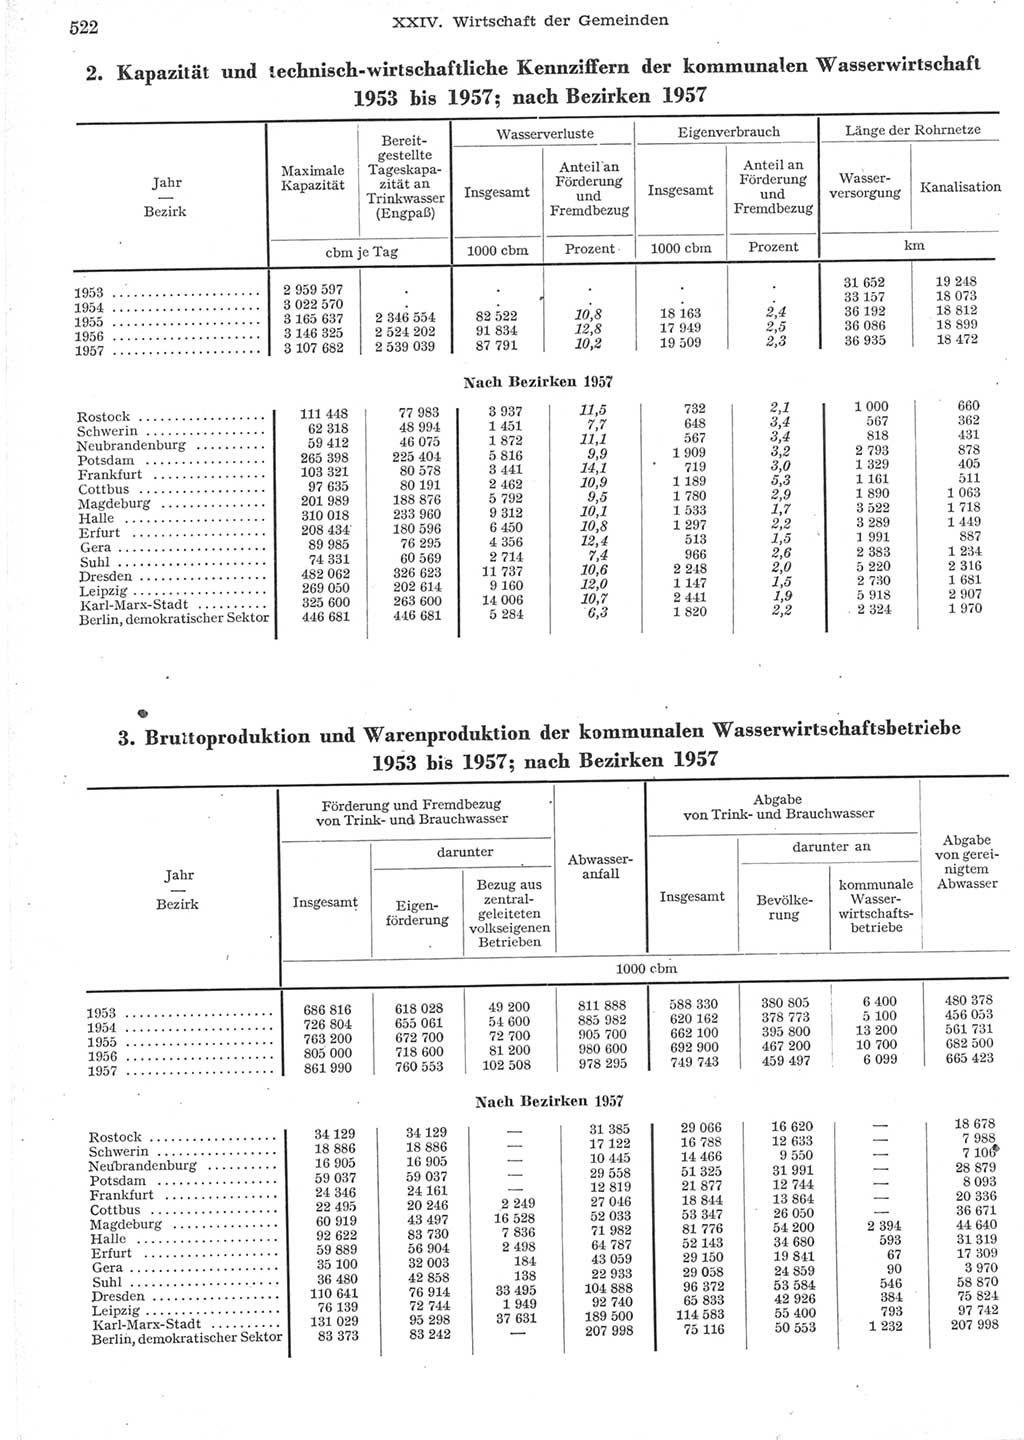 Statistisches Jahrbuch der Deutschen Demokratischen Republik (DDR) 1957, Seite 522 (Stat. Jb. DDR 1957, S. 522)